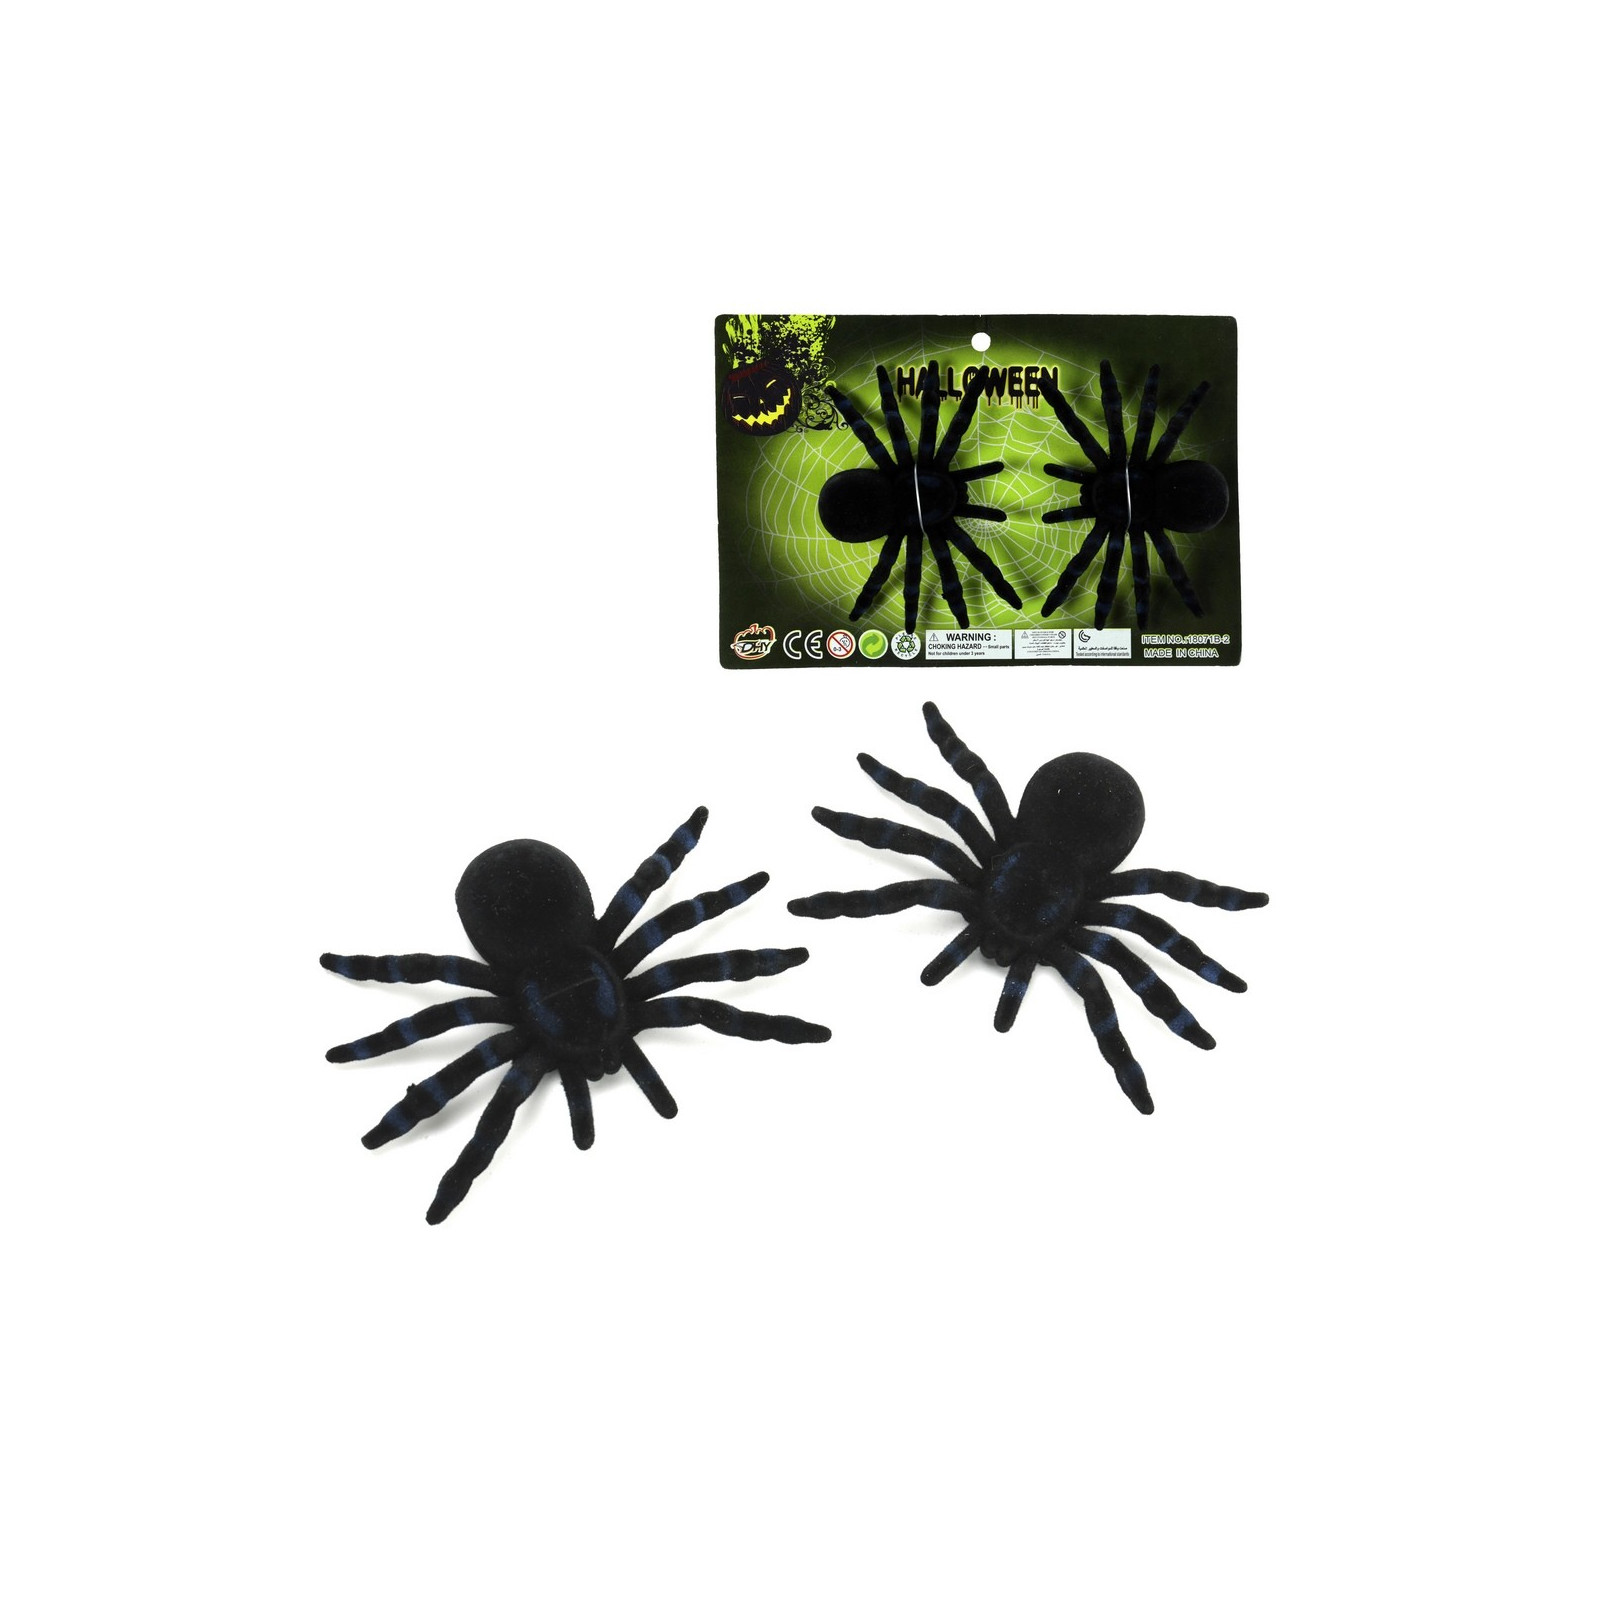 S 2 ragno in plastica floccata nera 10 x 7 cm